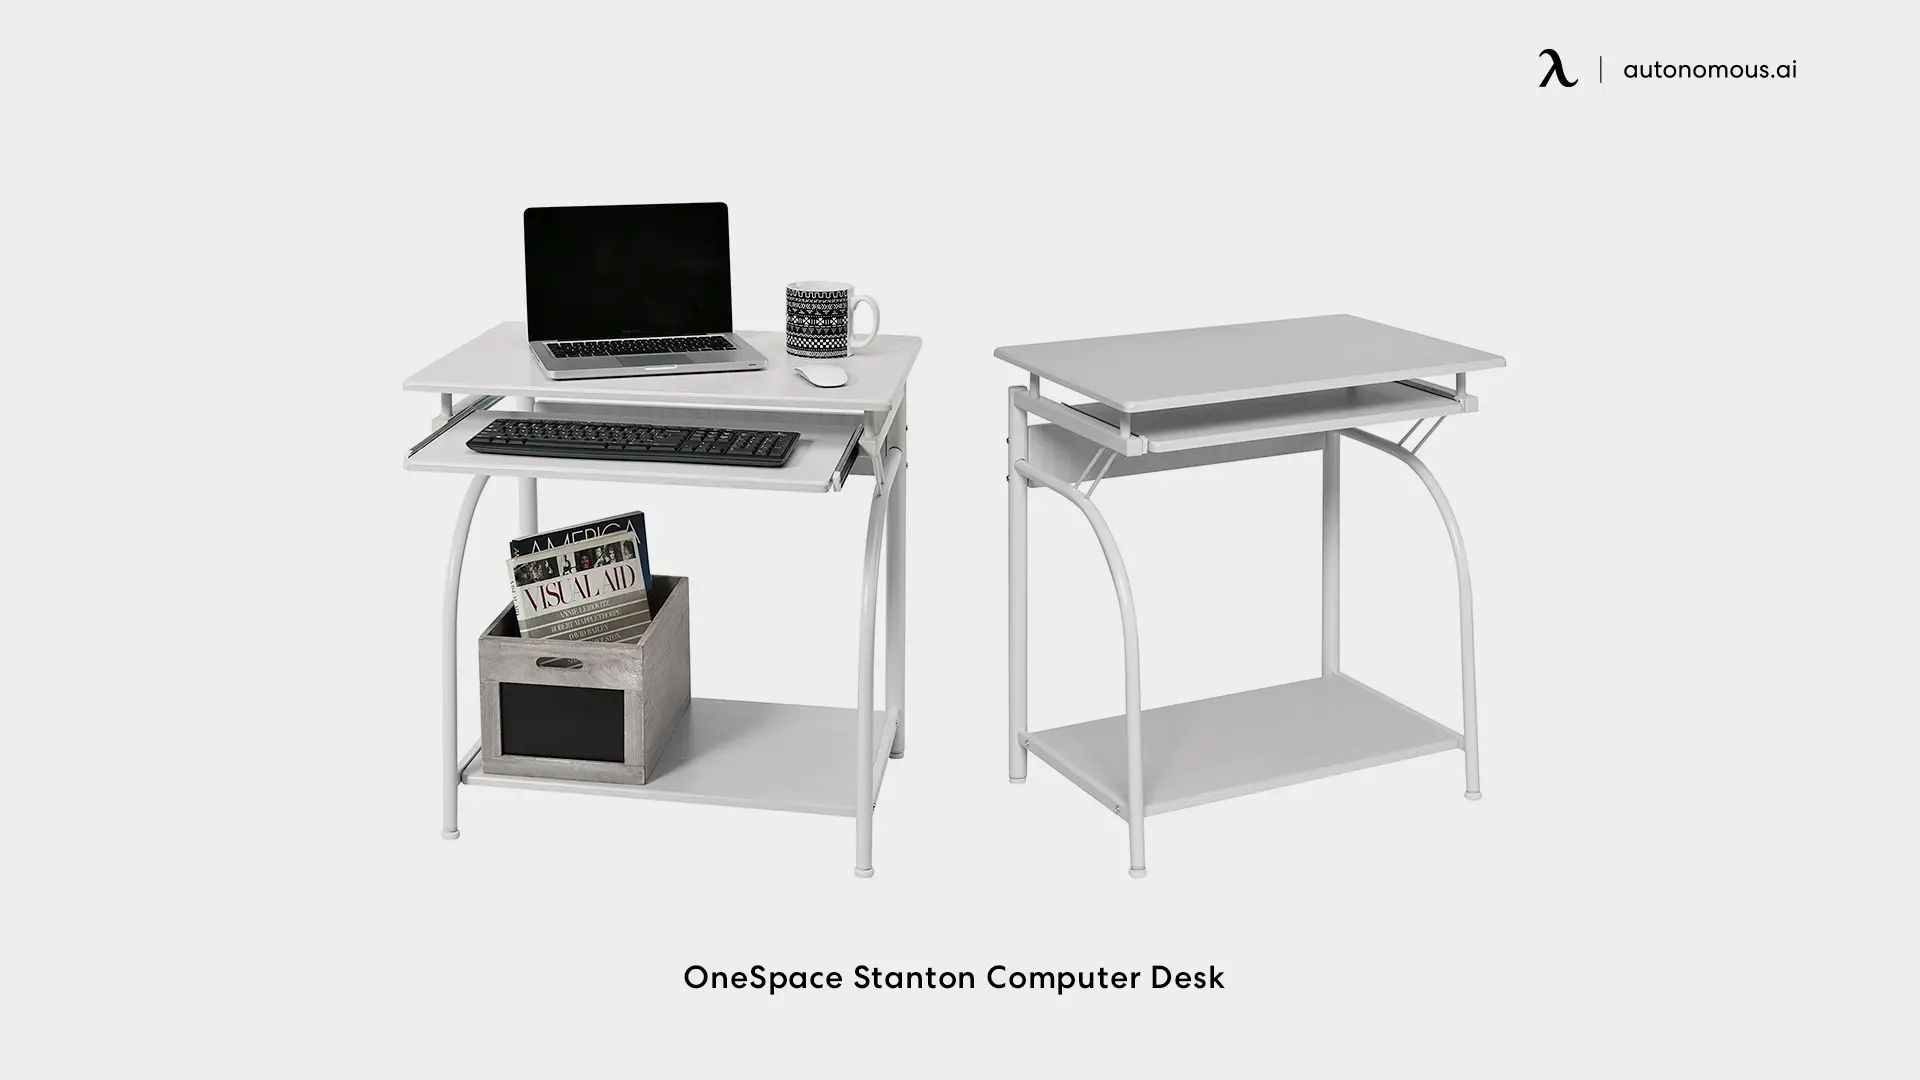 OneSpace Stanton Computer Desk - small white desk